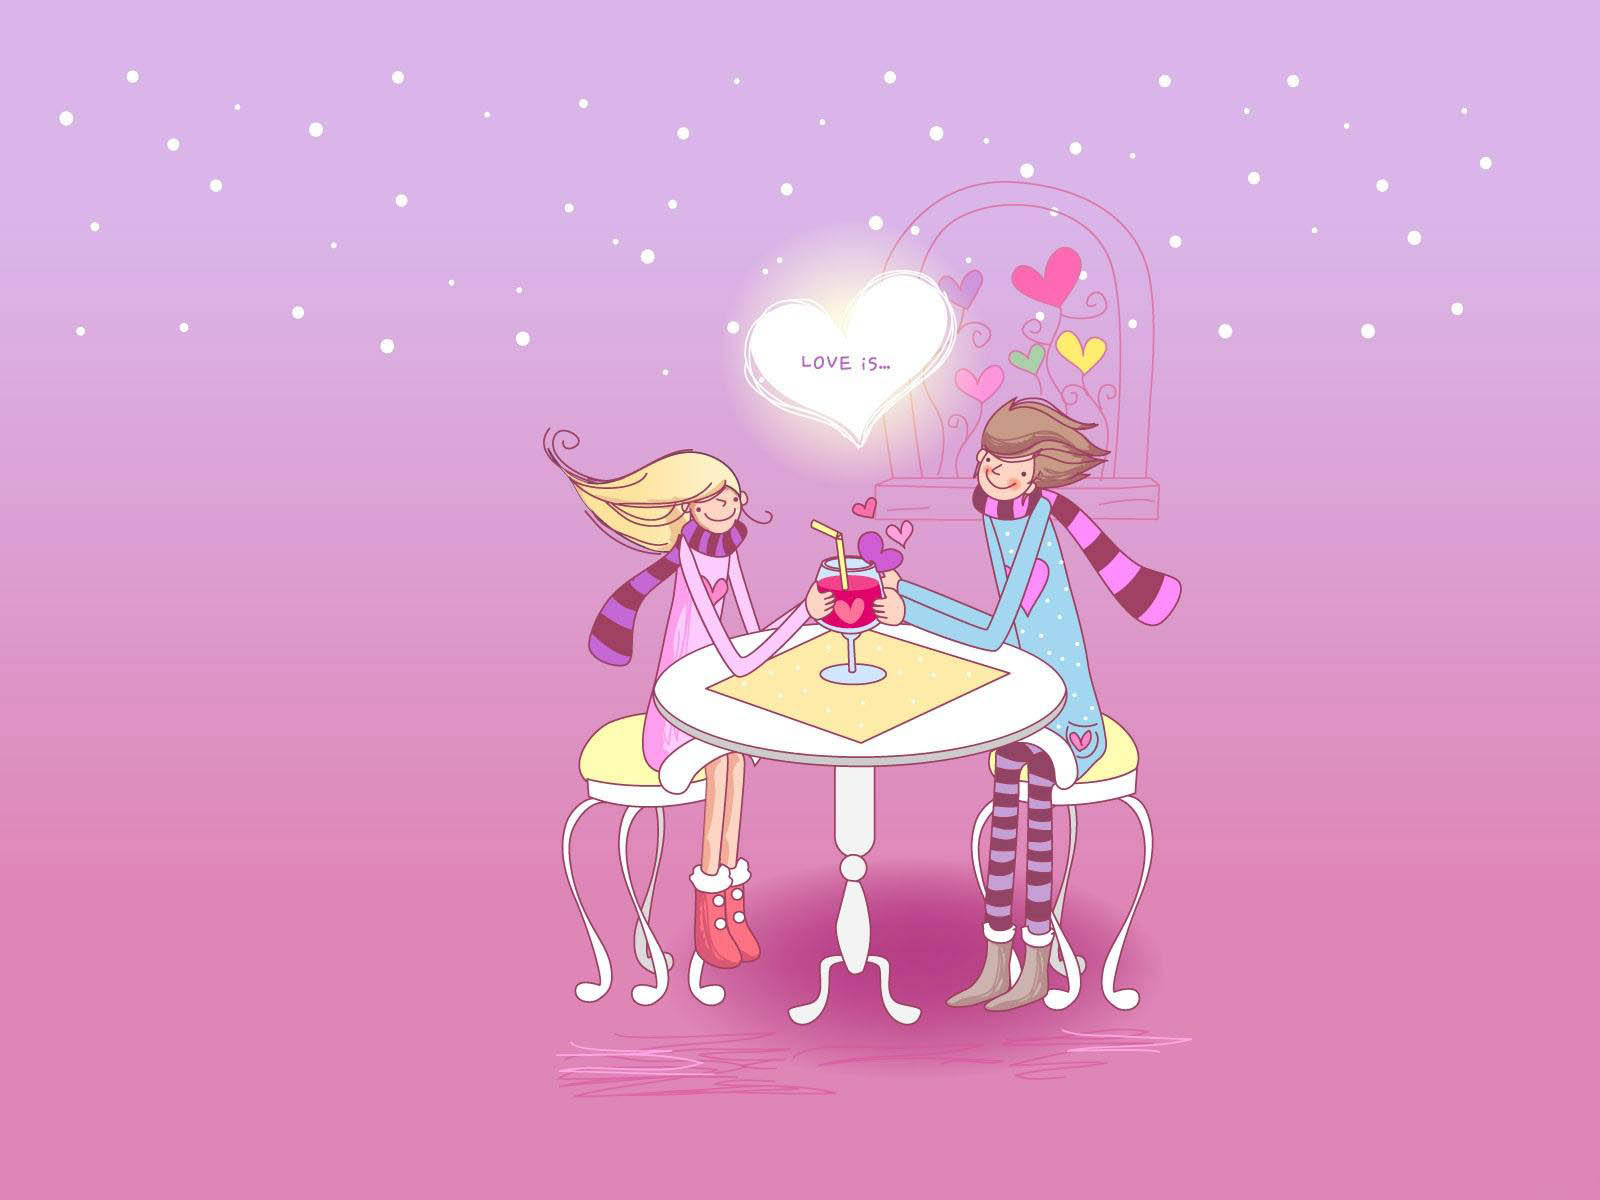 ロマンチックな愛の写真の壁紙,漫画,図,テーブル,ピンク,家具